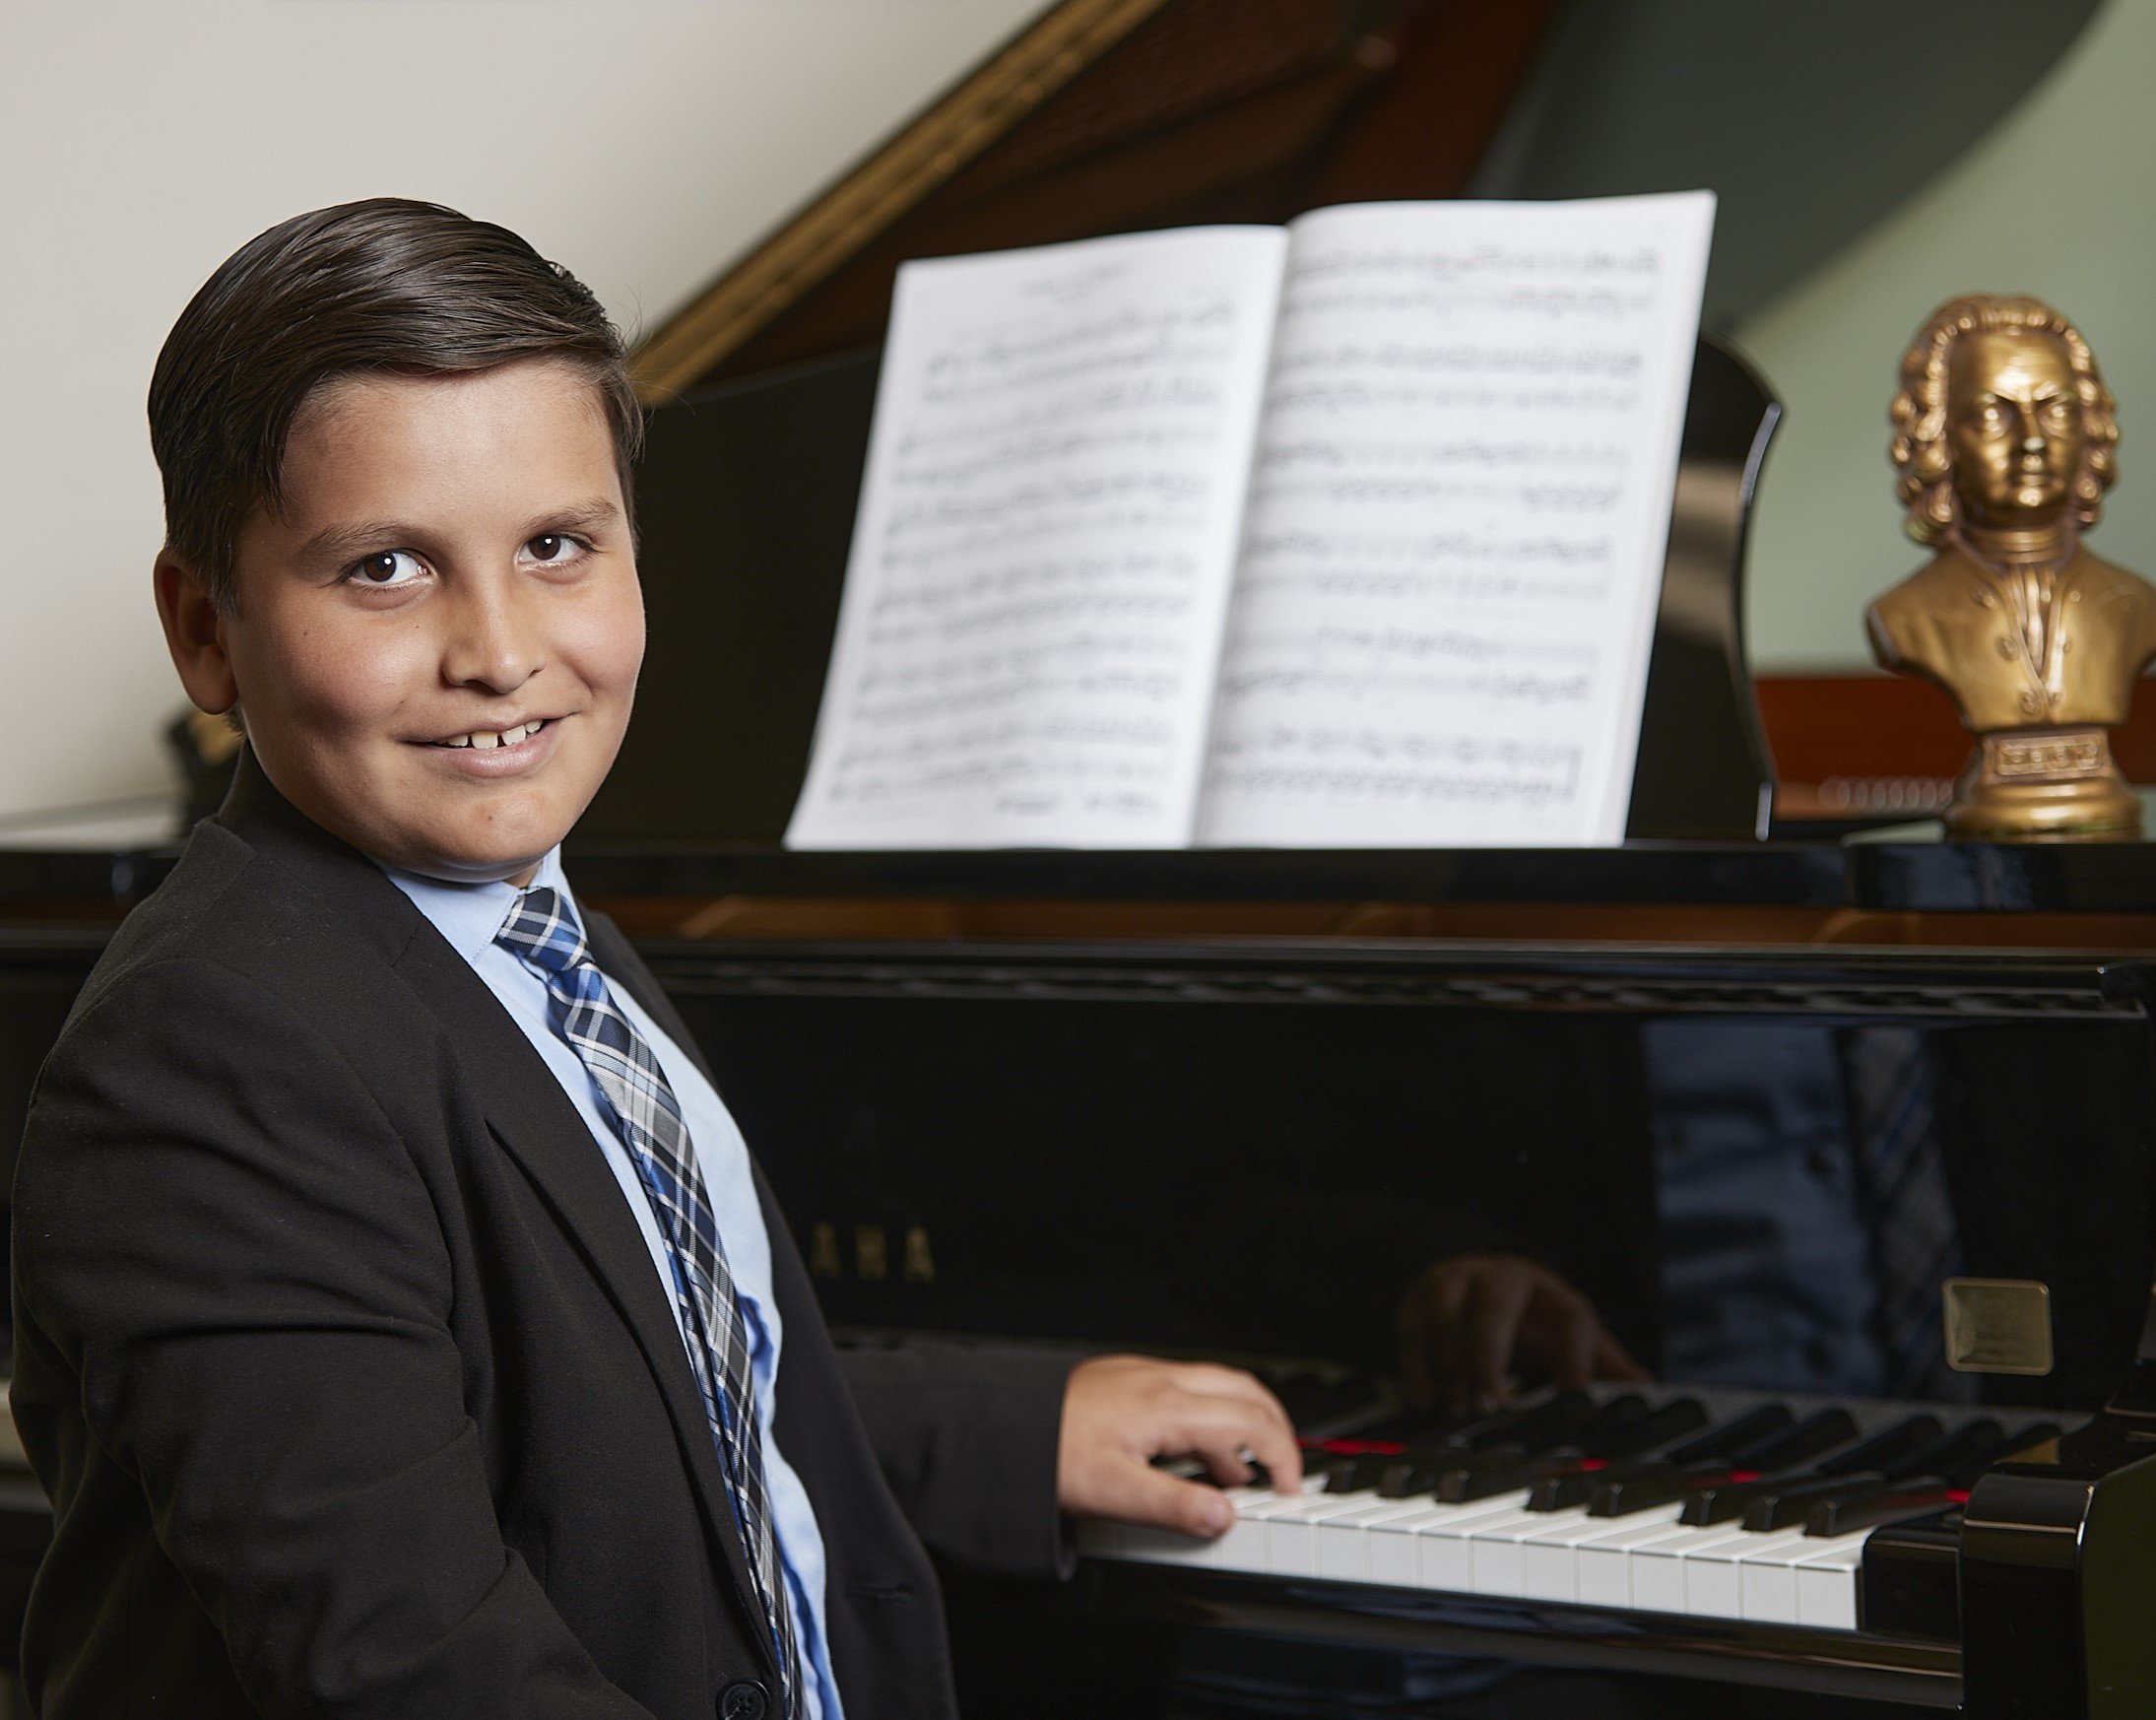 Dallas Piano Student at Dallas Piano Academy